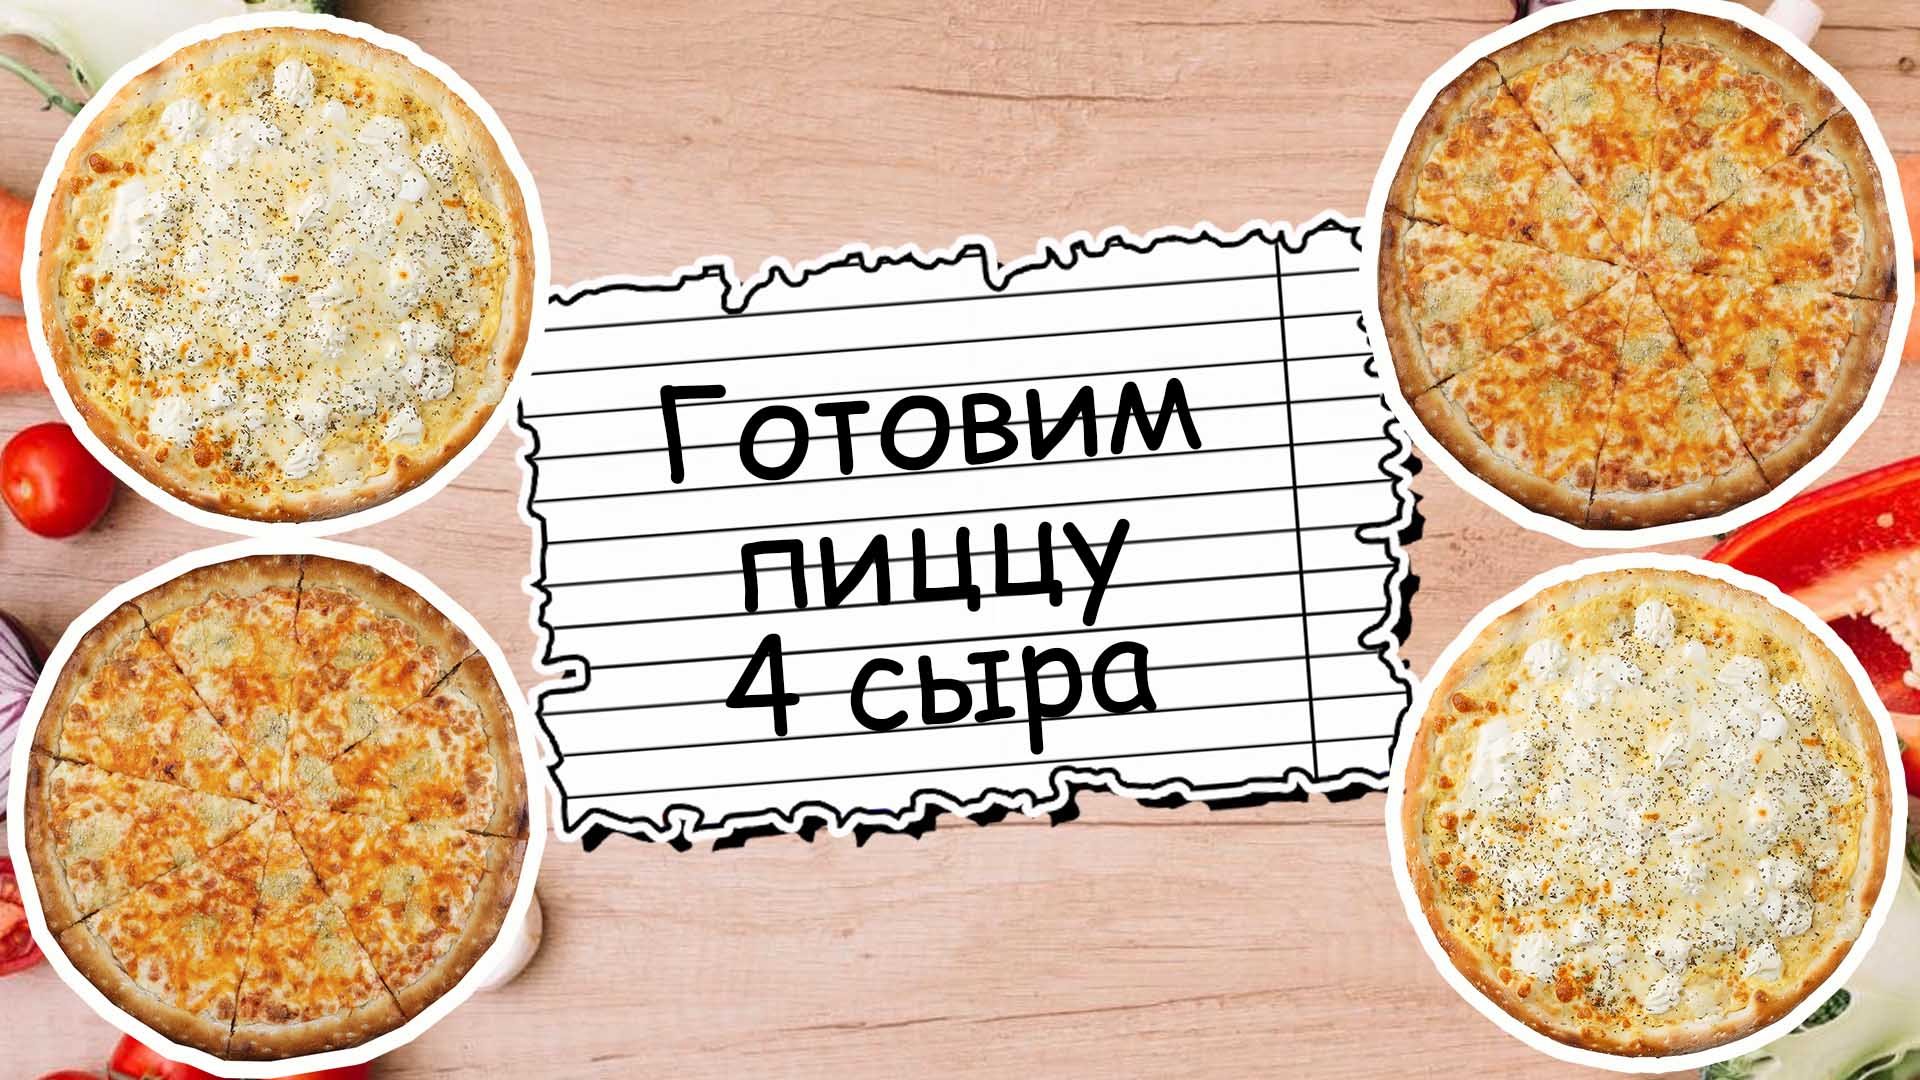 пицца четыре сыра рецепт видео фото 54